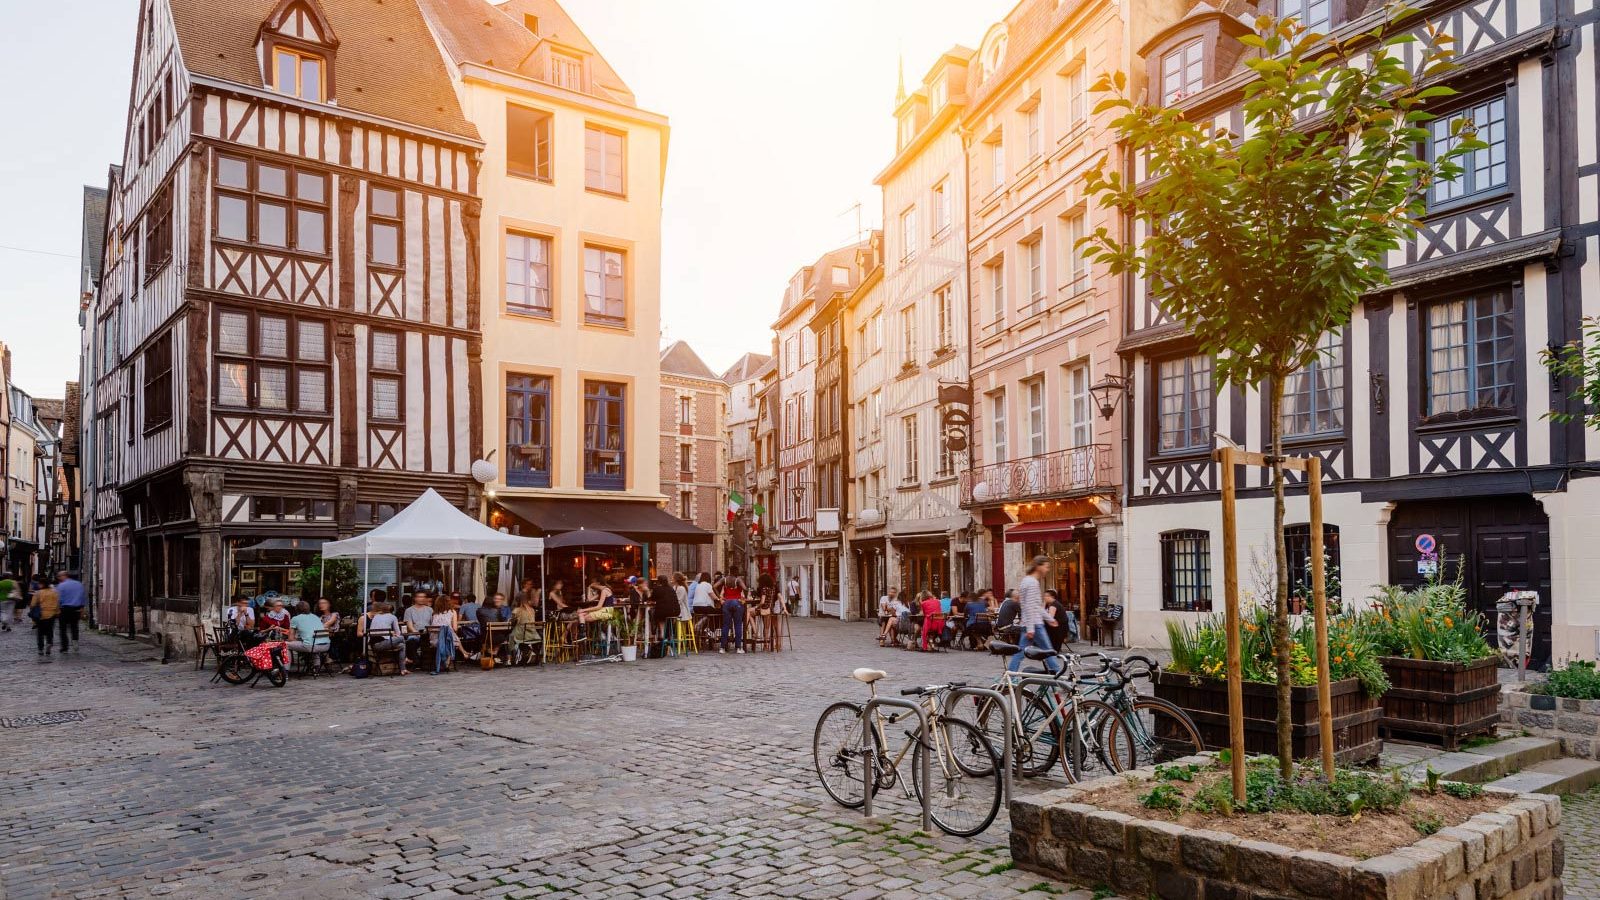 Visit Rouen - Normandy Tourism, France